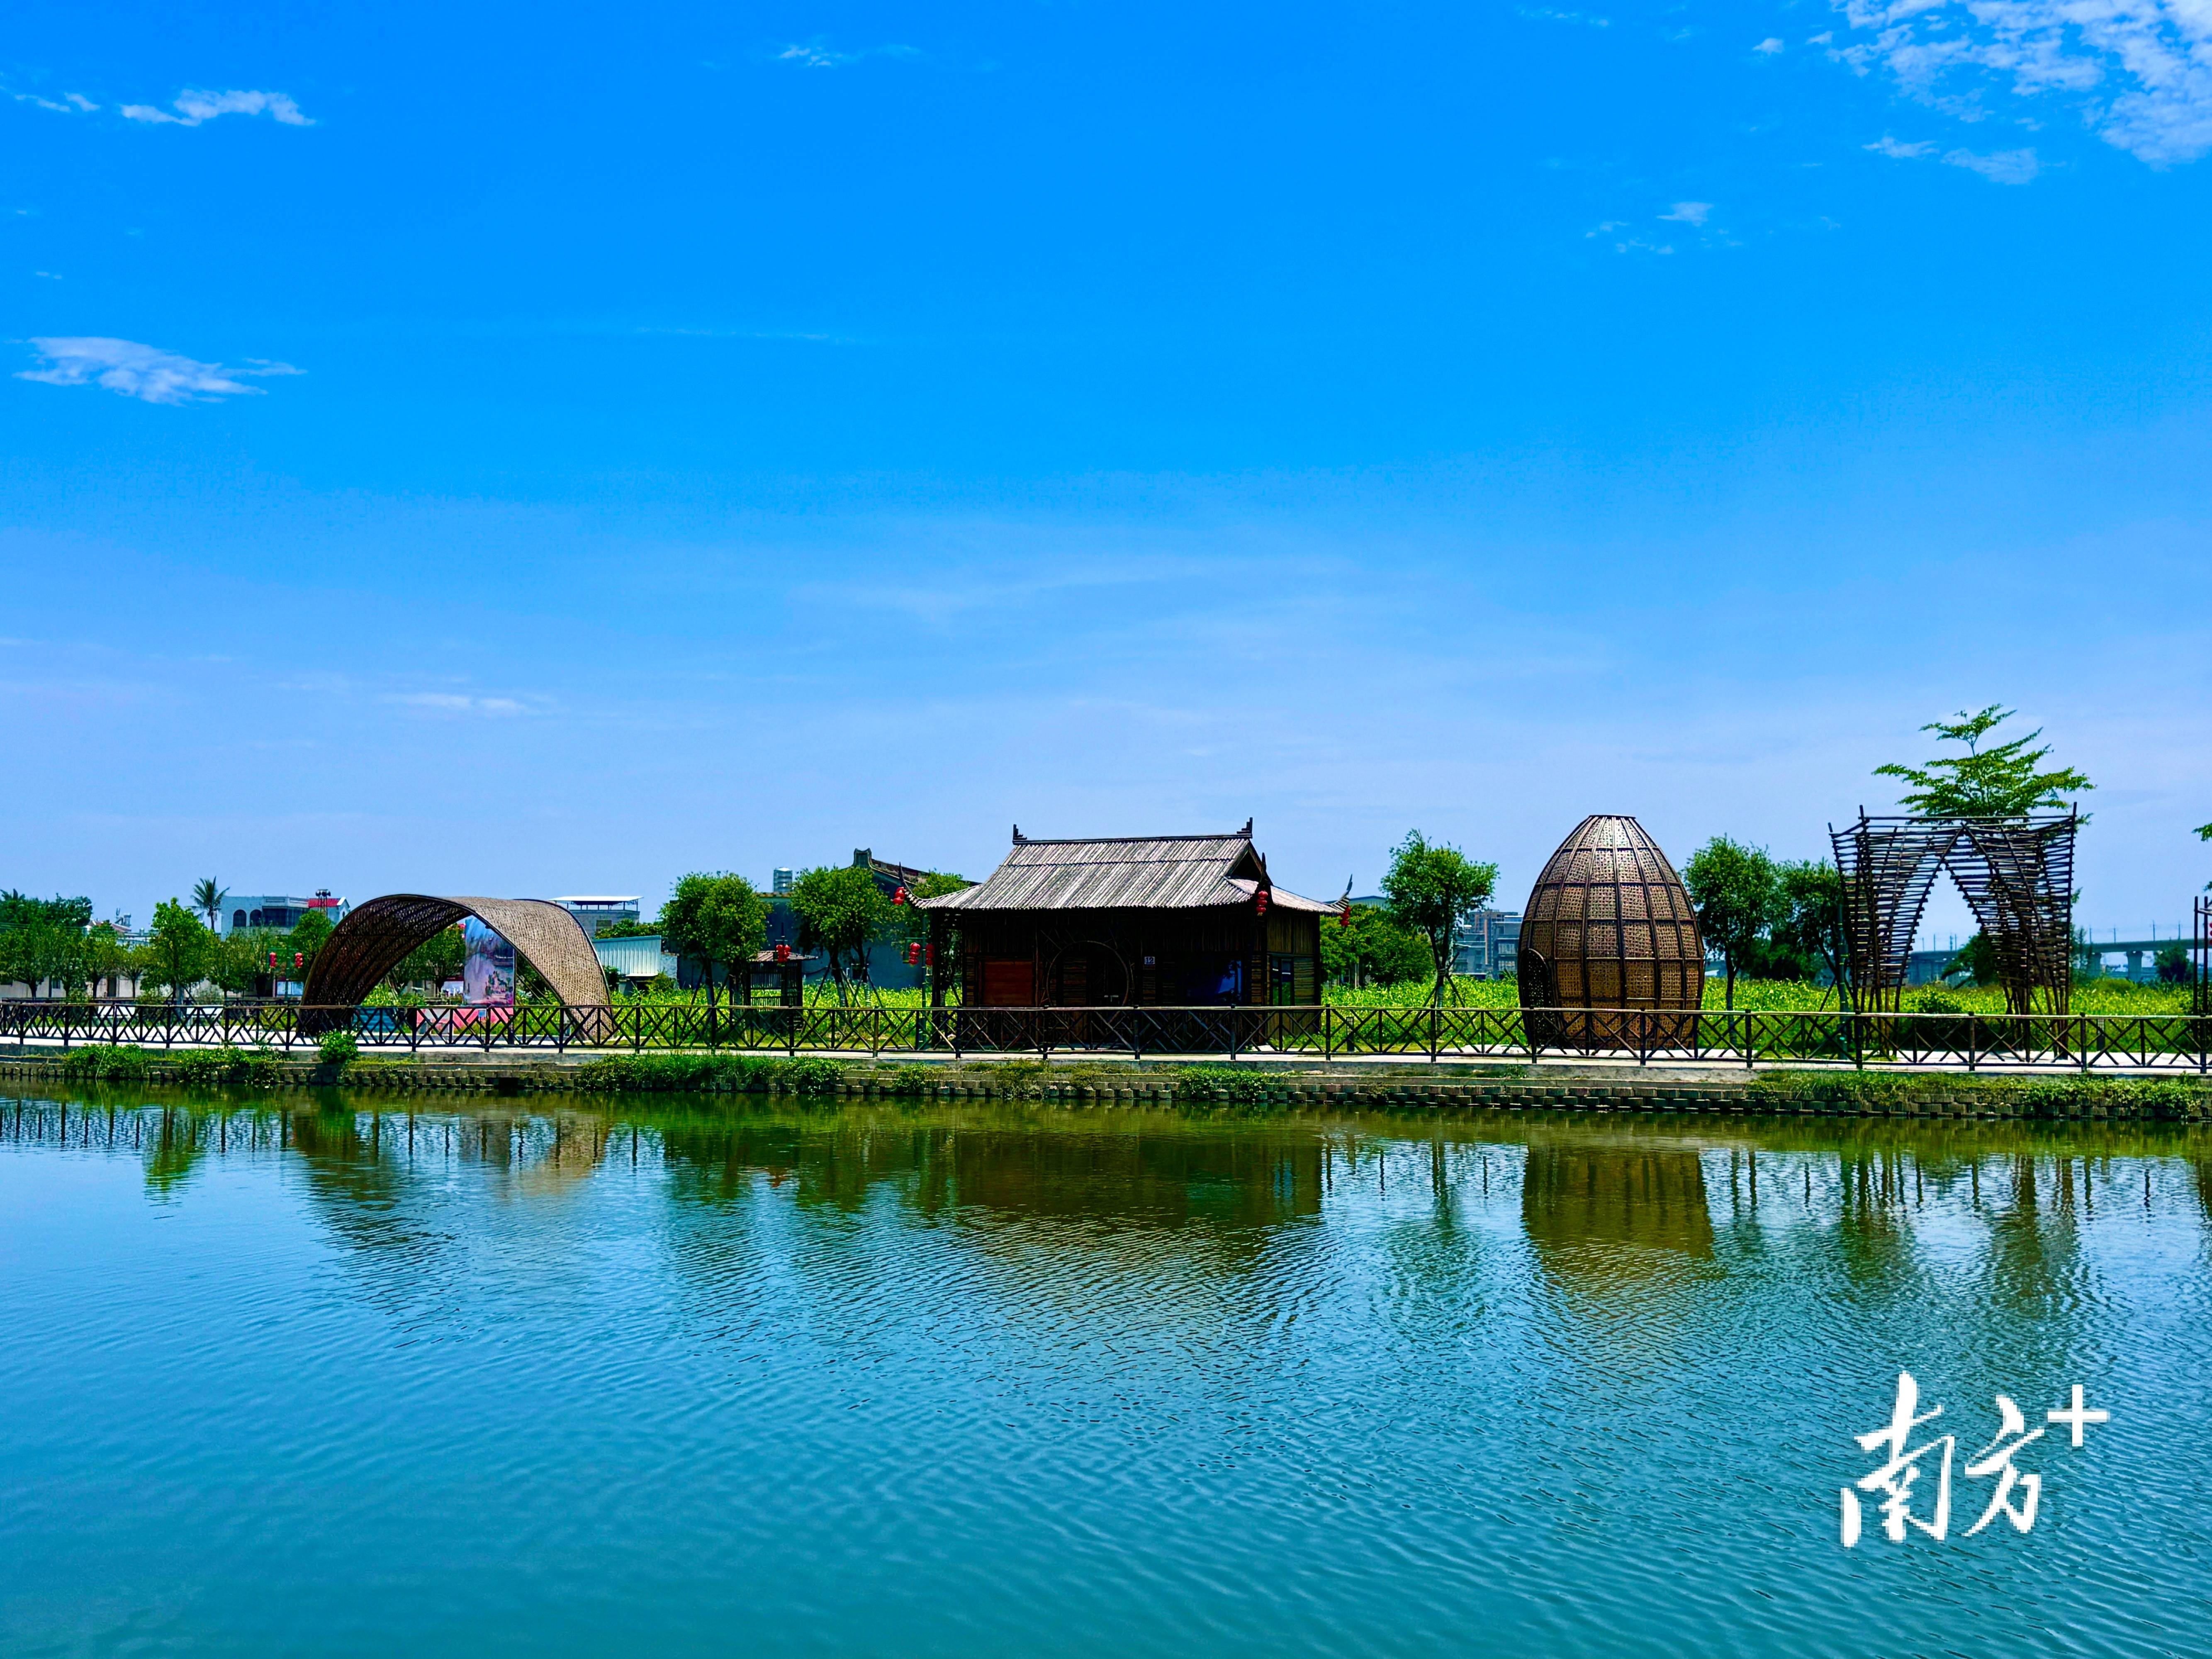 沙溪镇打造的竹生态公园师生体验竹文化特色研学课程